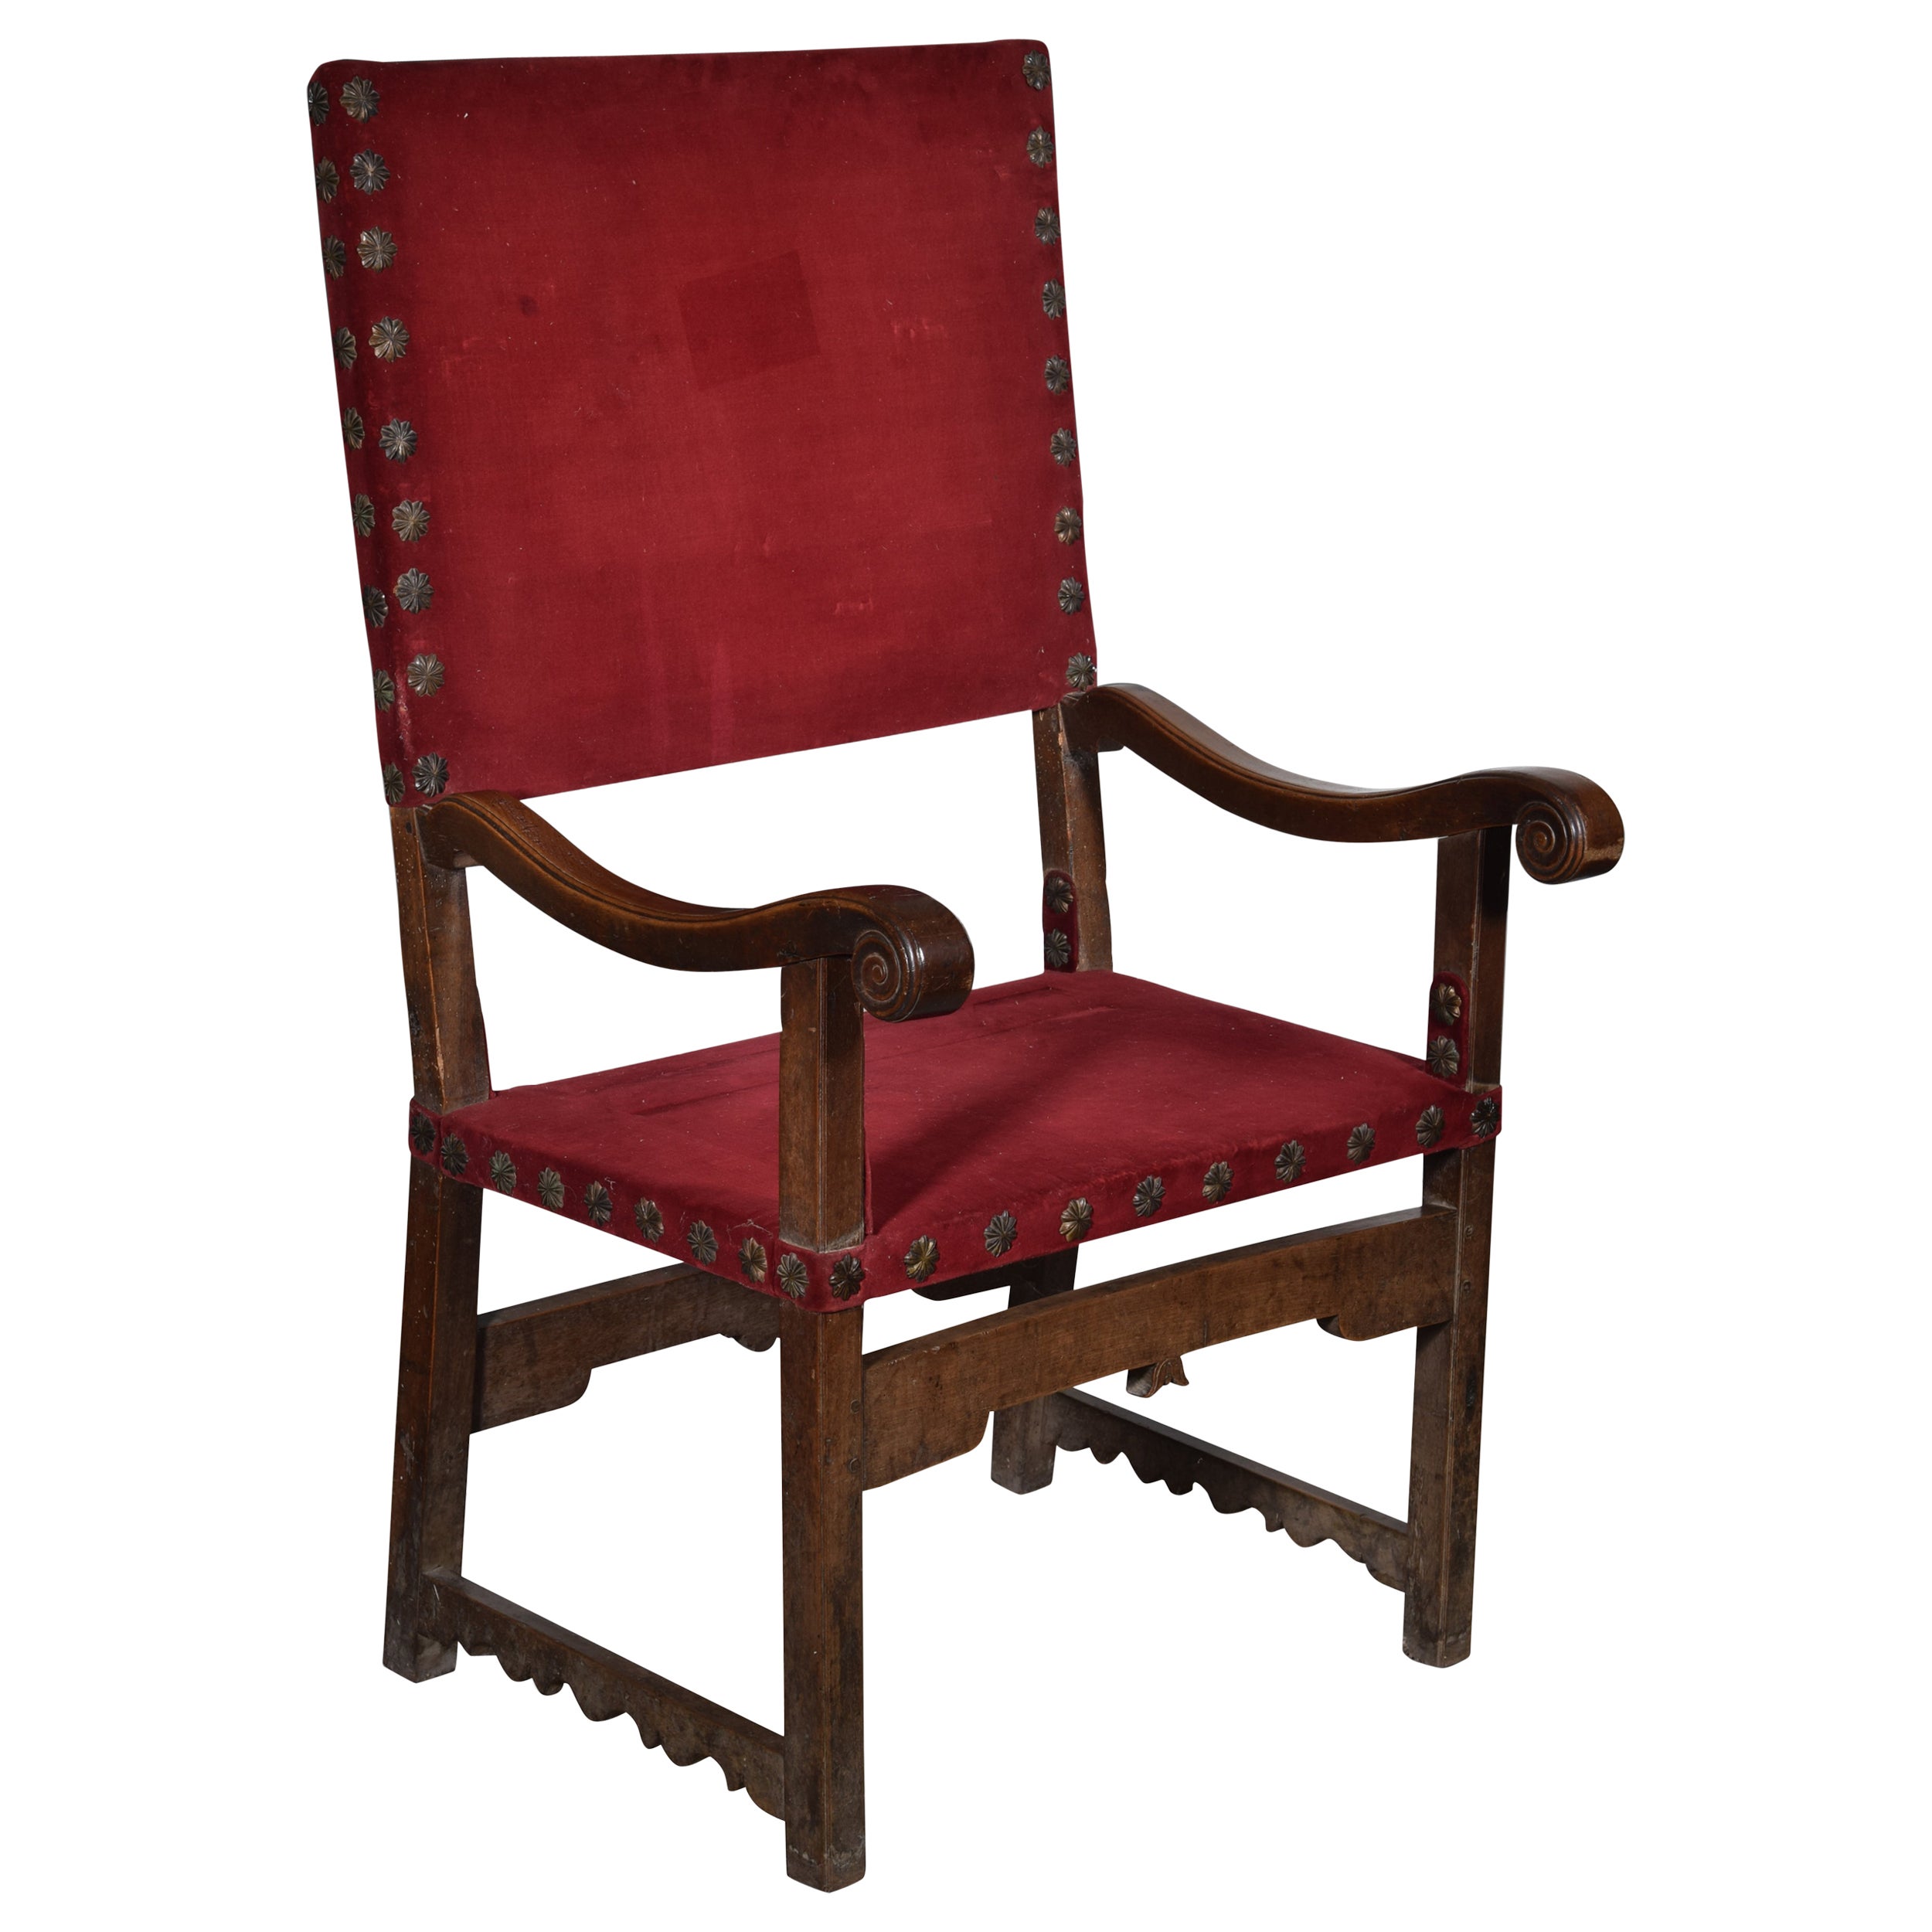 Friar armchair (frailero). Walnut wood, textile. Spain, 17th century. For Sale